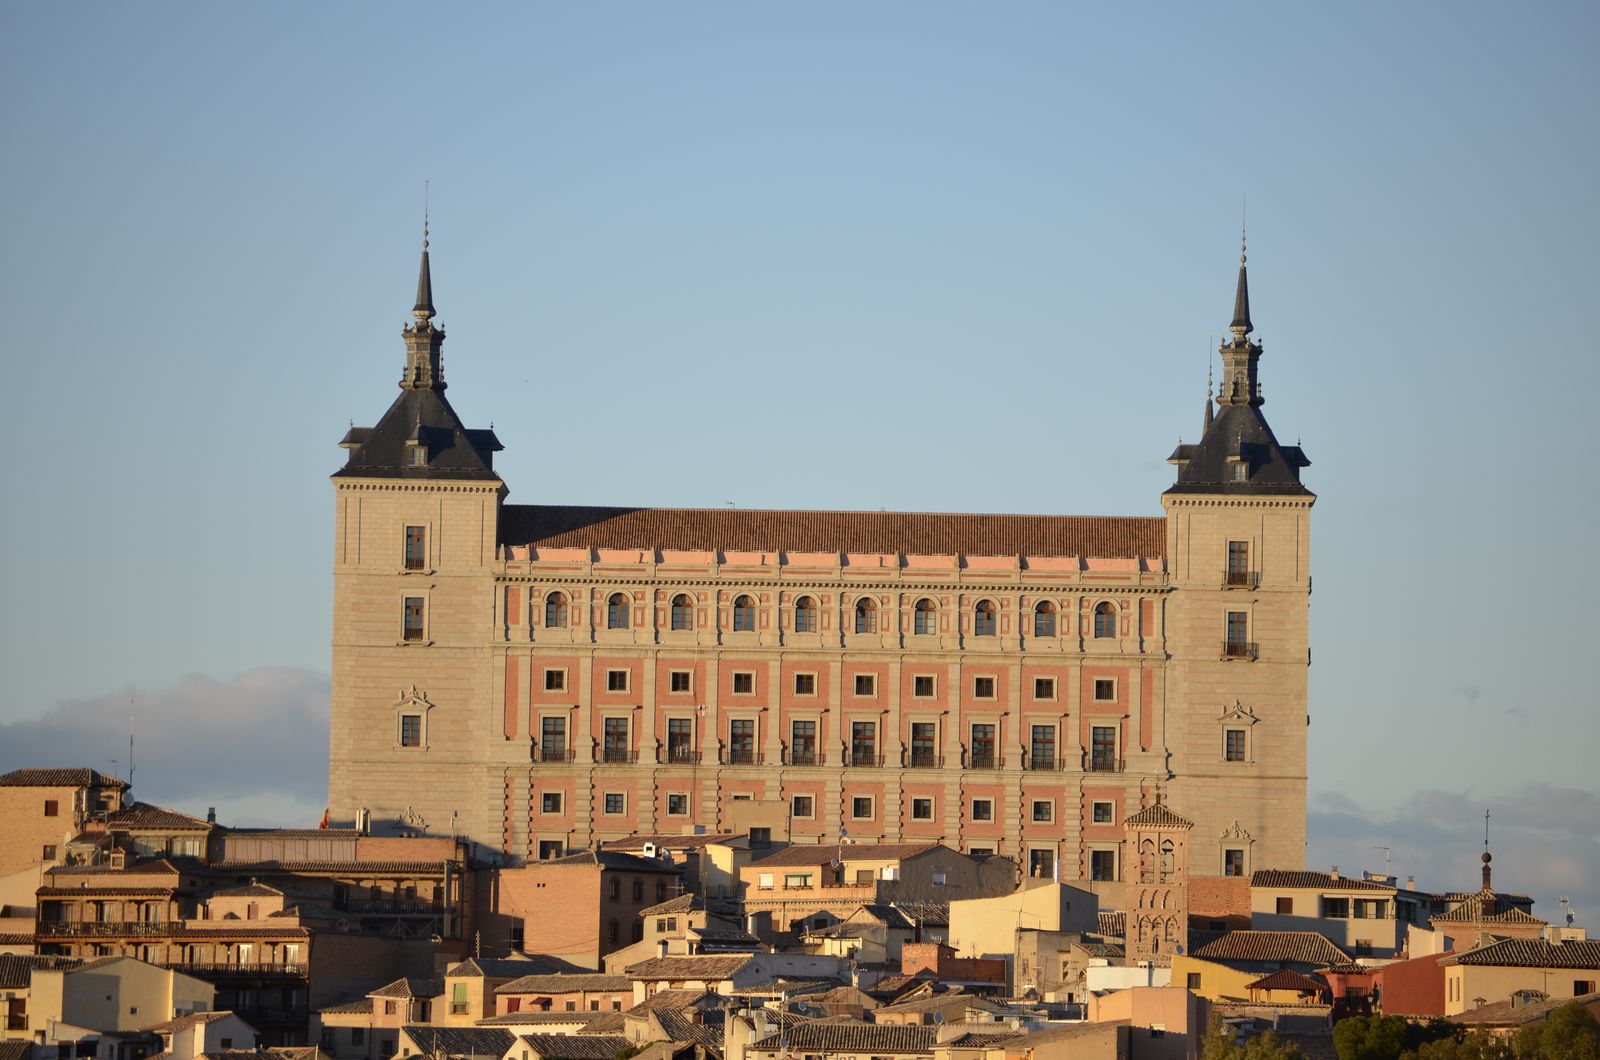 Ruta del Vino de Toledo | Turismo Toledo